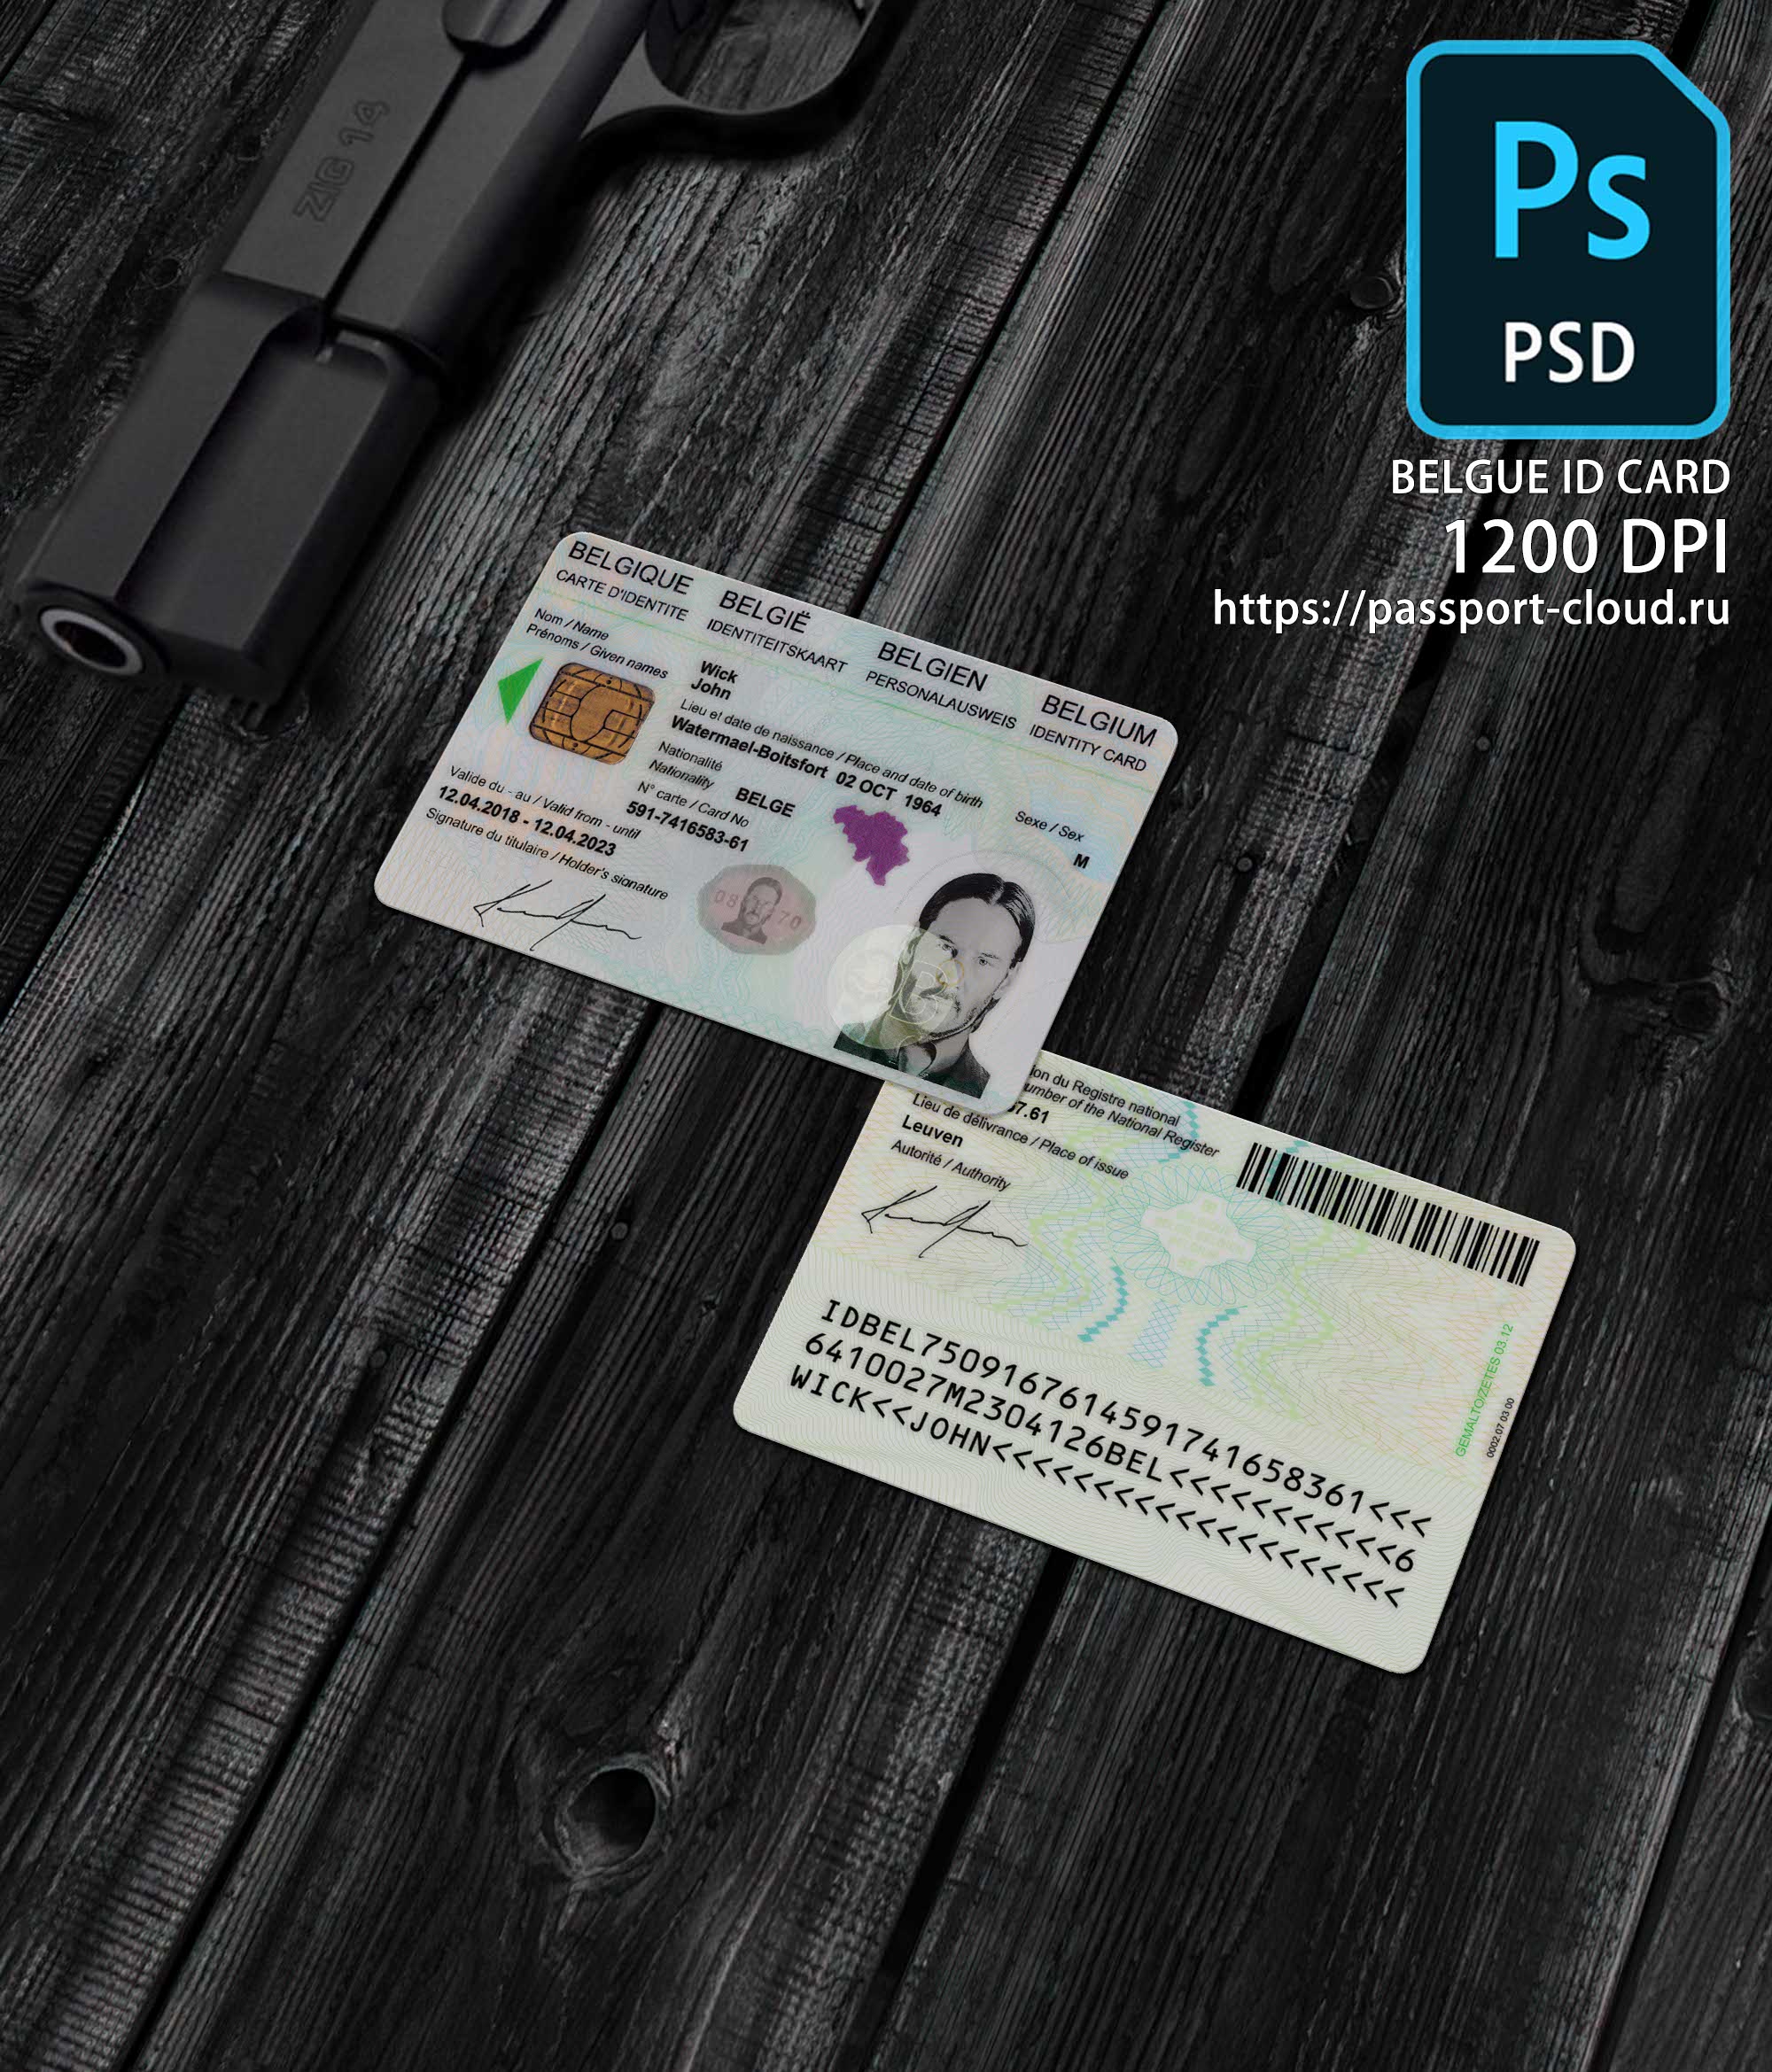 Belgue ID Card 2015+ PSD1